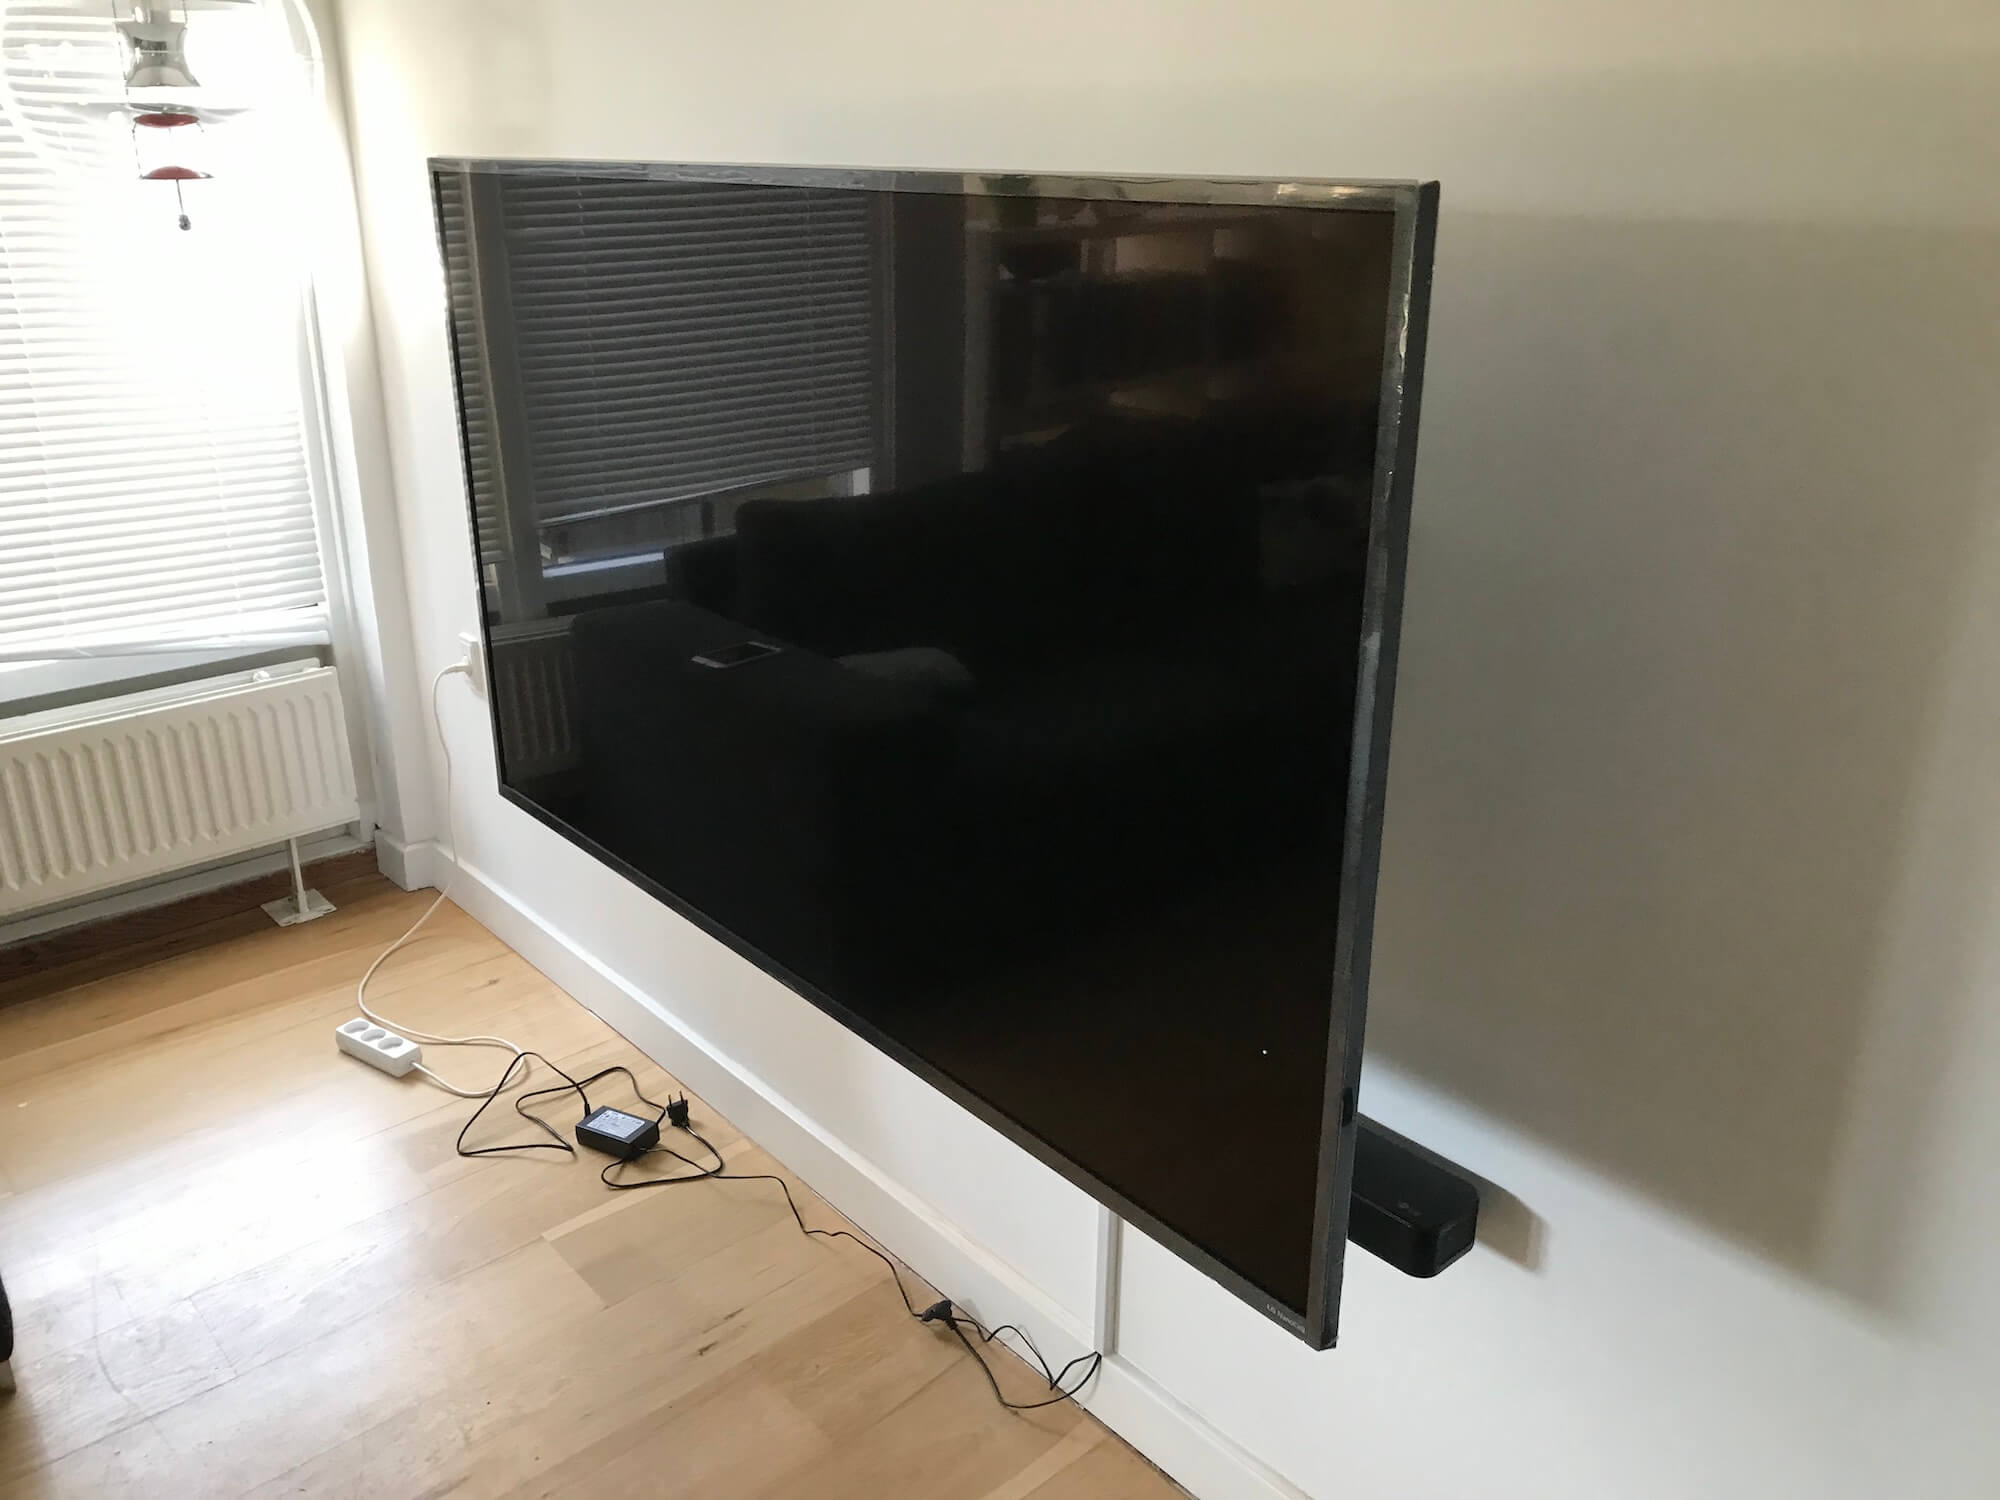 Installation af LG TV